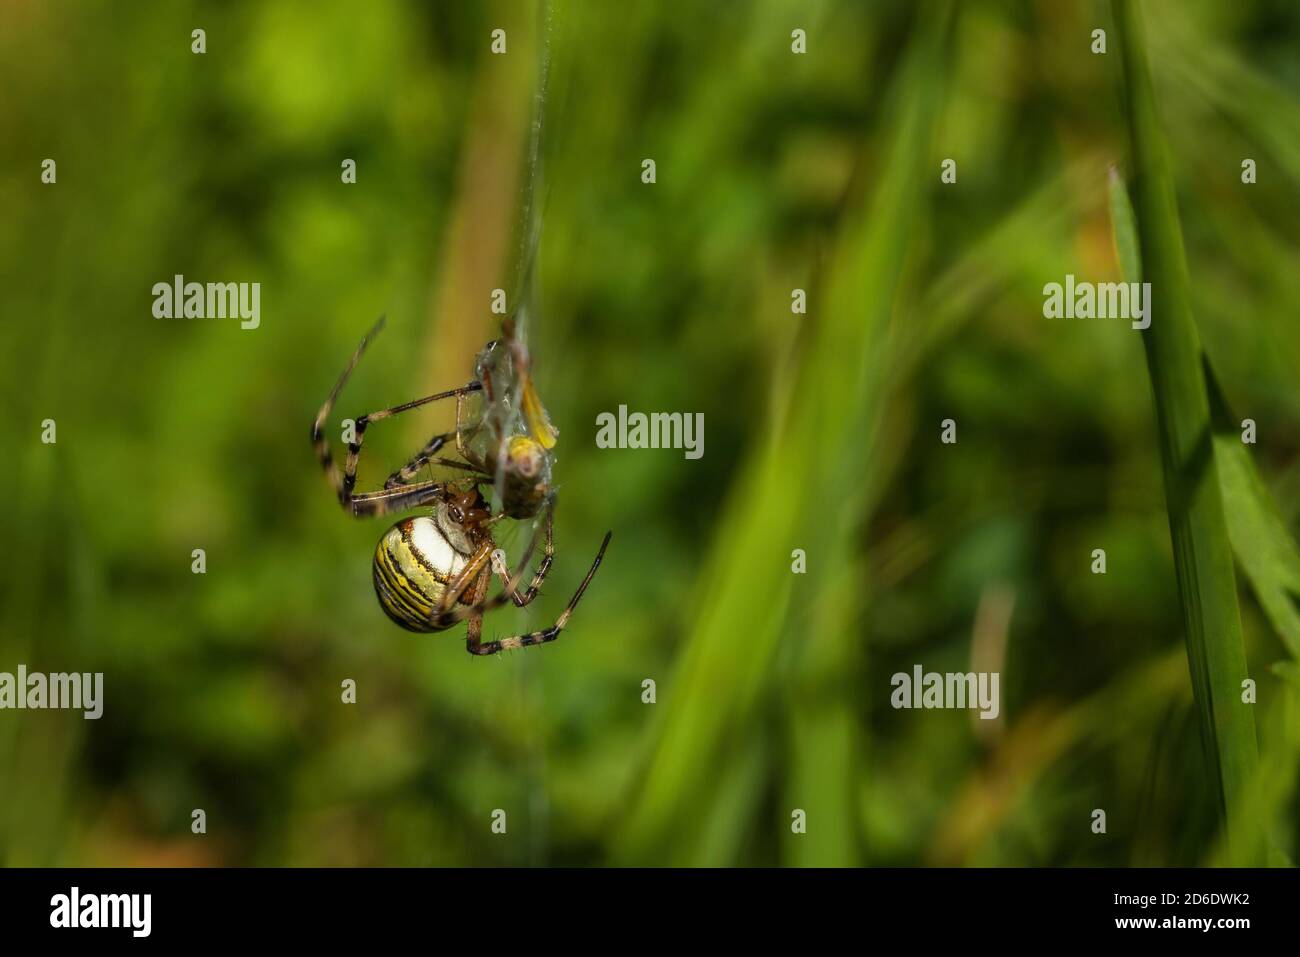 Une araignée à guêpe femelle avec des marques jaunes et noires accrochées à la toile d'araignée qui enchâssent un criquet en tant que proie. Herbe verte en arrière-plan. Banque D'Images